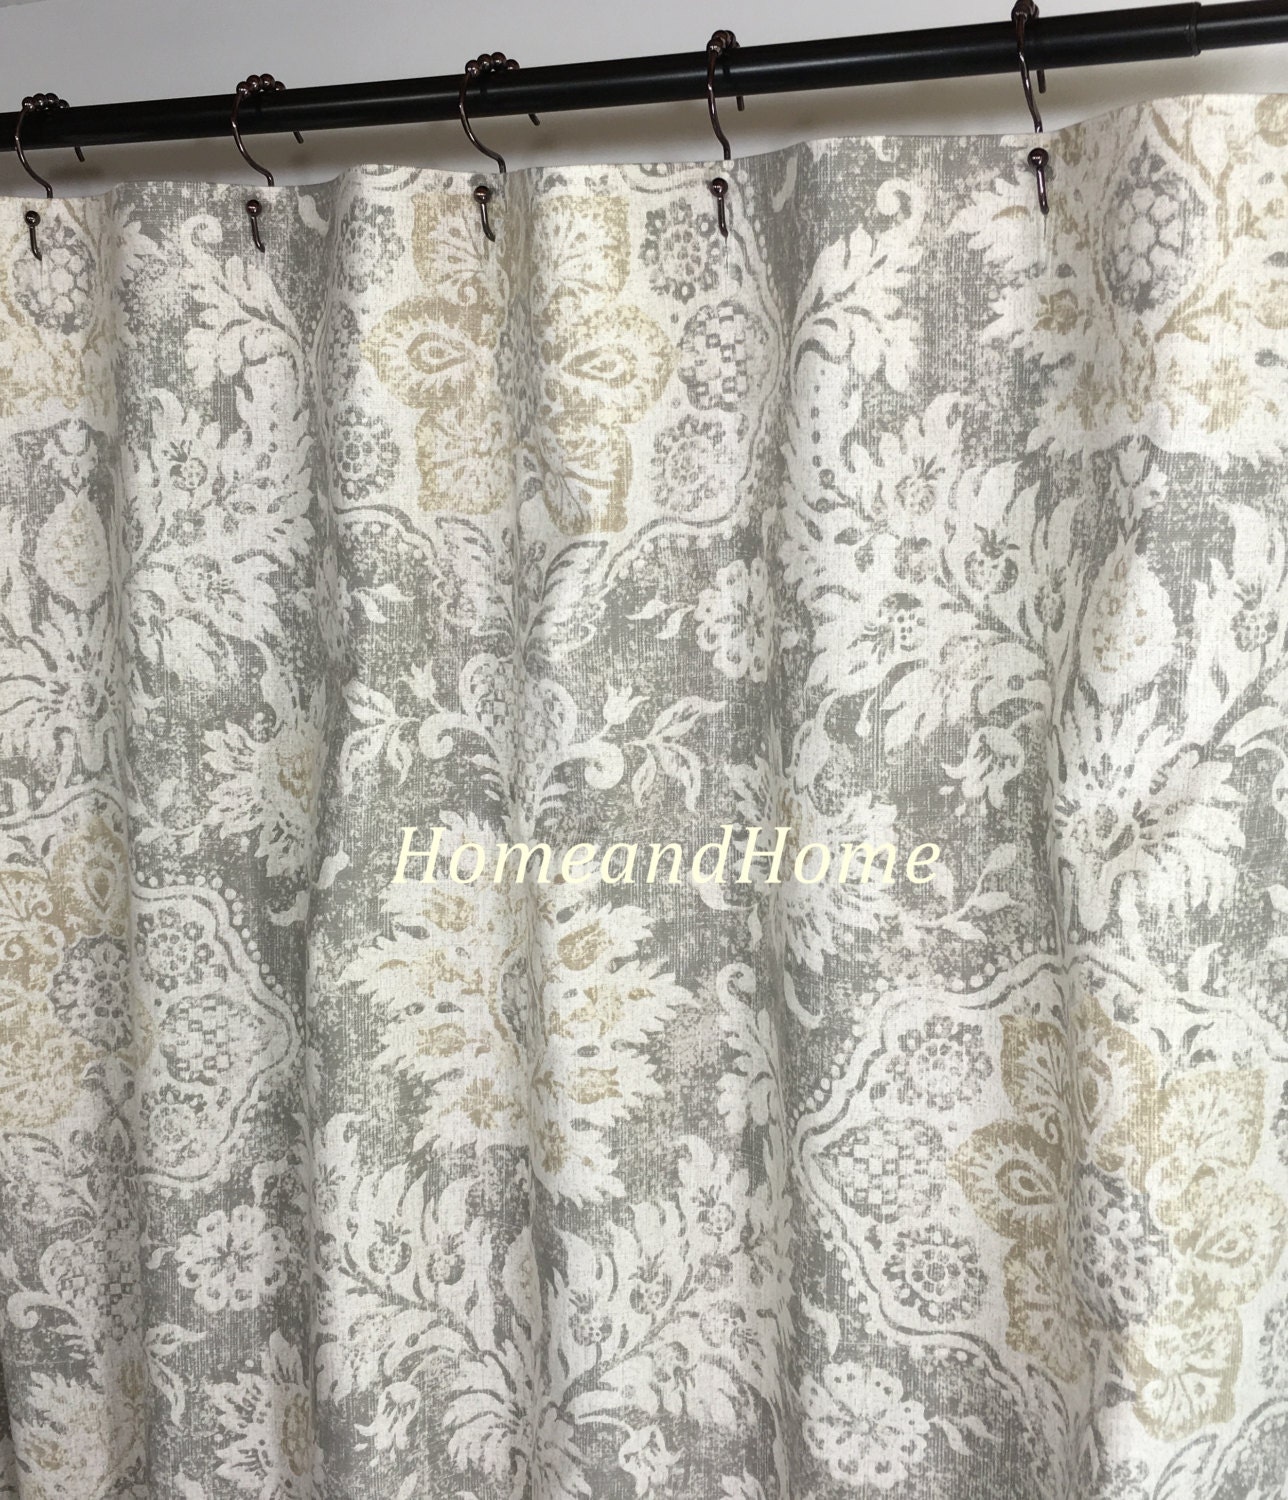 Shower curtain Belmont Mist beige grey cream 72 x84 108 Custom | Etsy